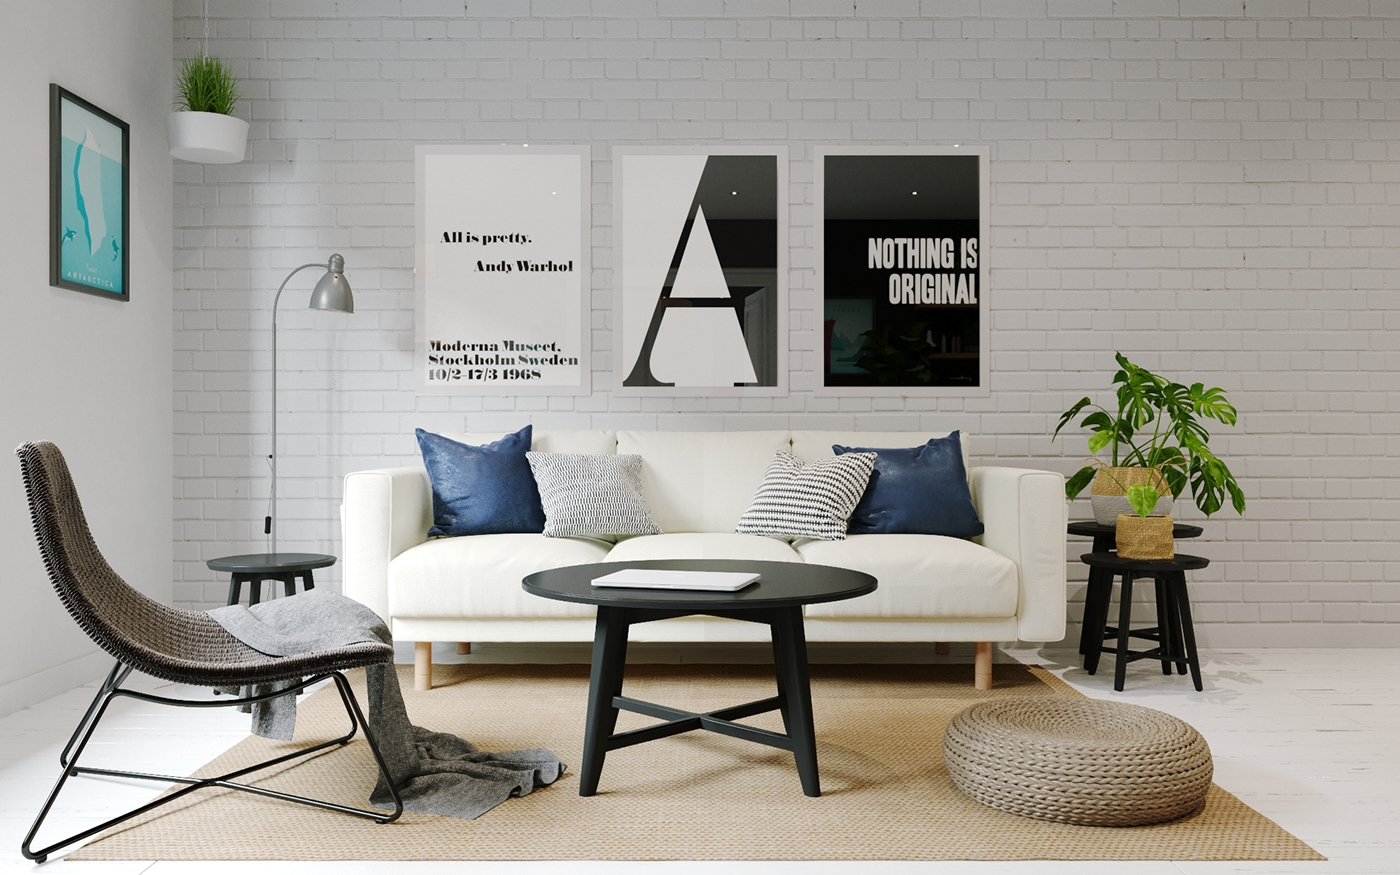 Interior apartment Scandinavian ikea Render visualization warsaw poland ukraine